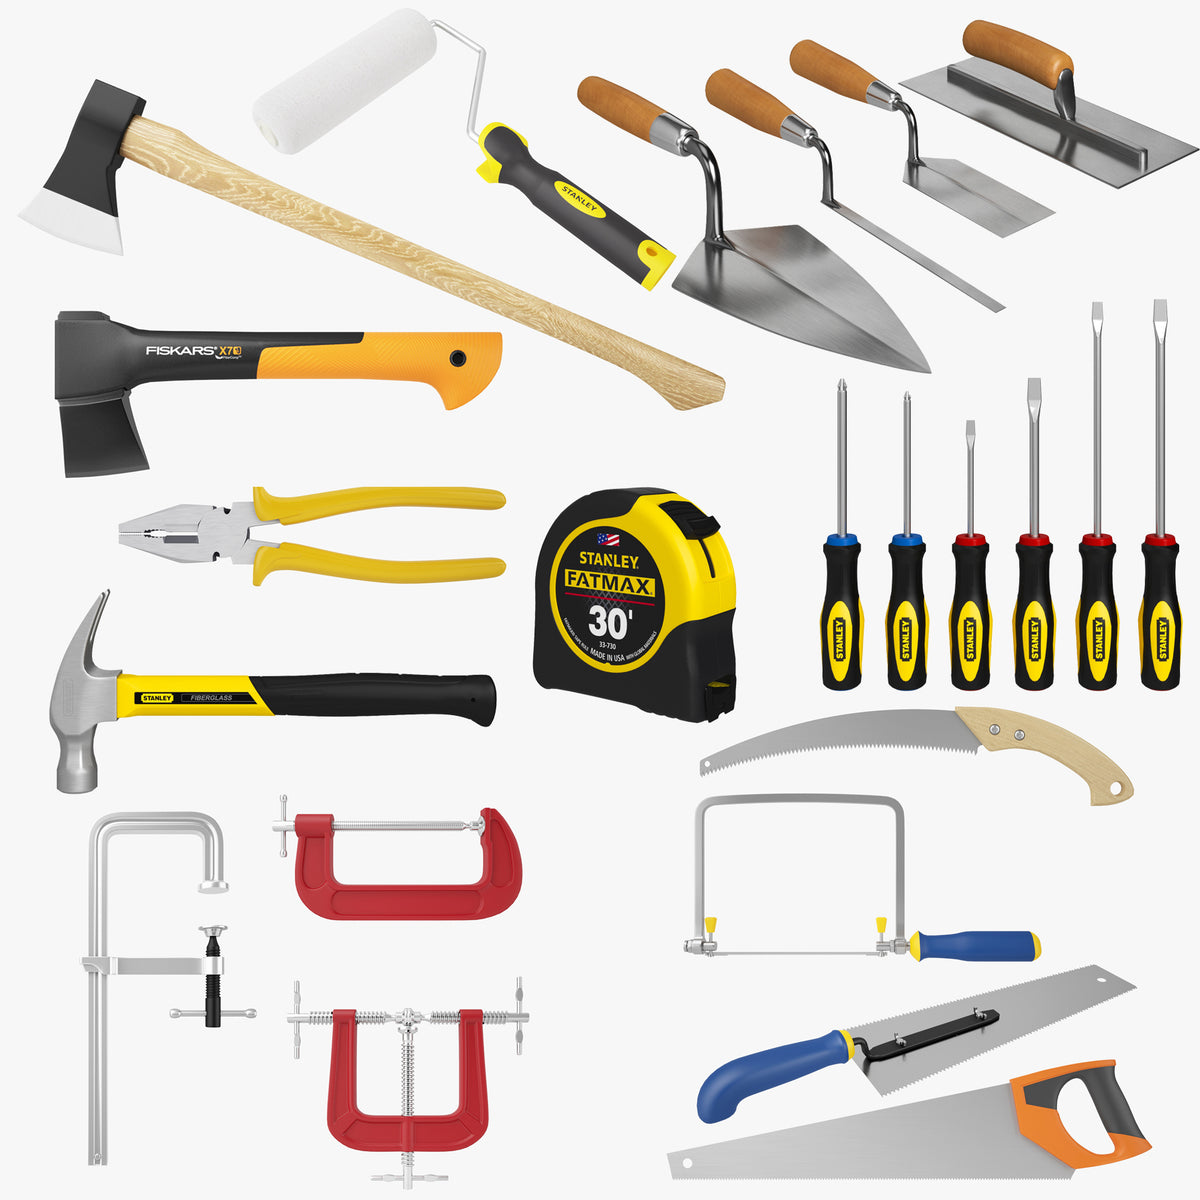 Industrial tools. 3d Max модели инструментов. Строительные инструменты. Инструменты 3д. Инструменты для стройки.